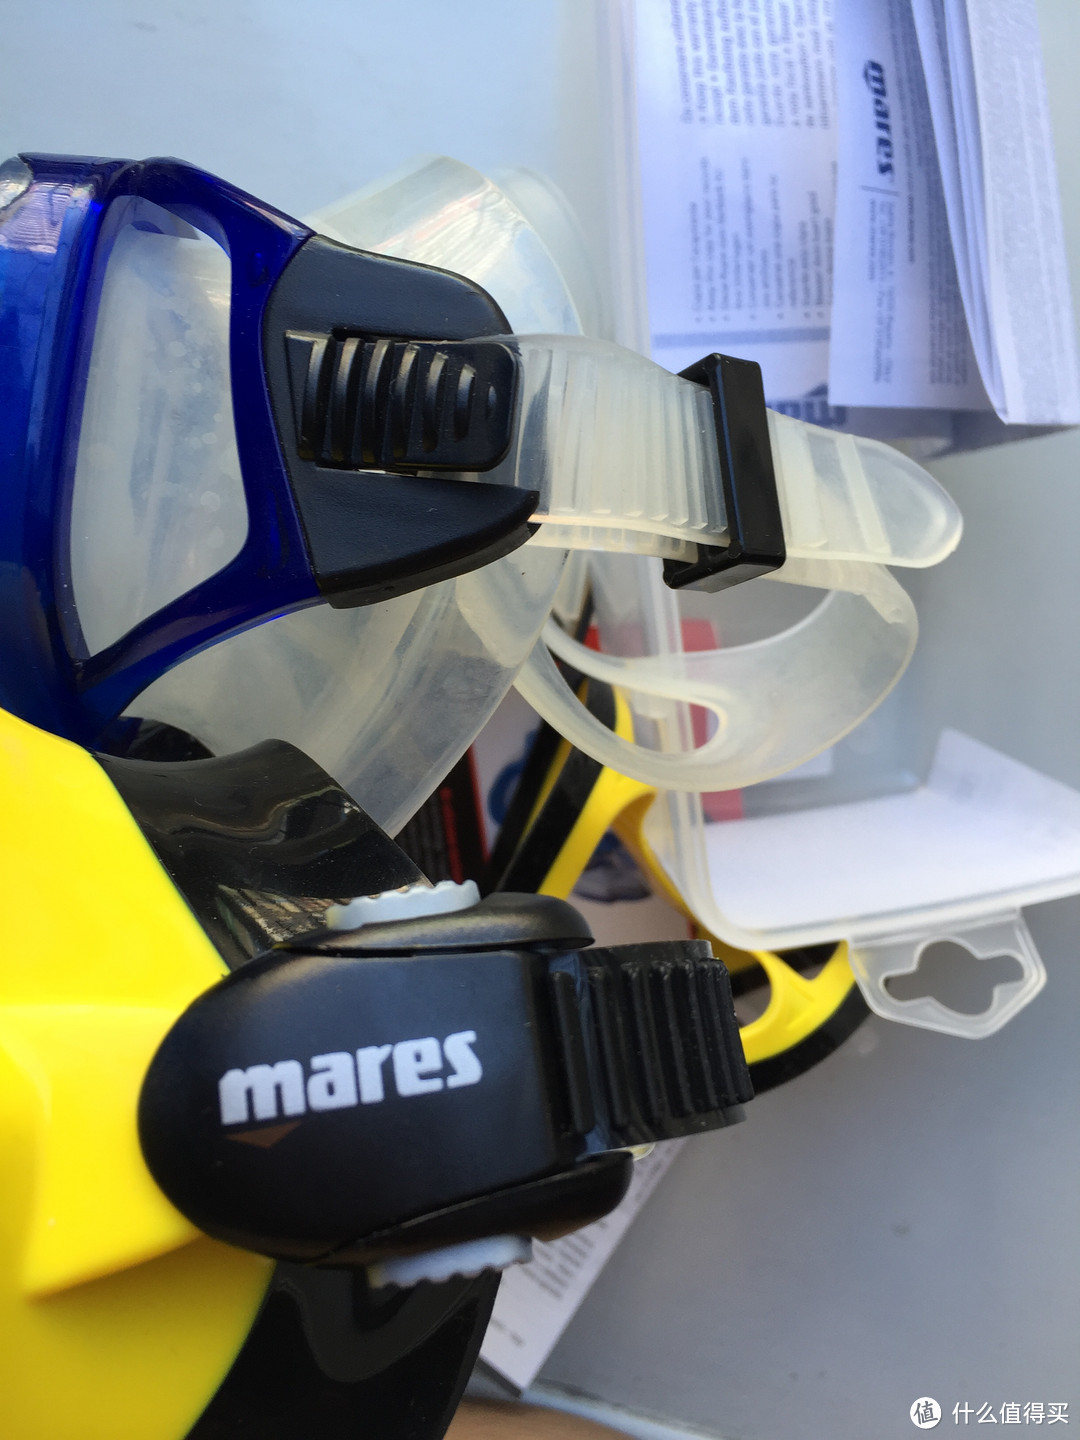 #本站首晒# MARES X-vision 潜水面镜 及 DiCAPac 手机防水袋